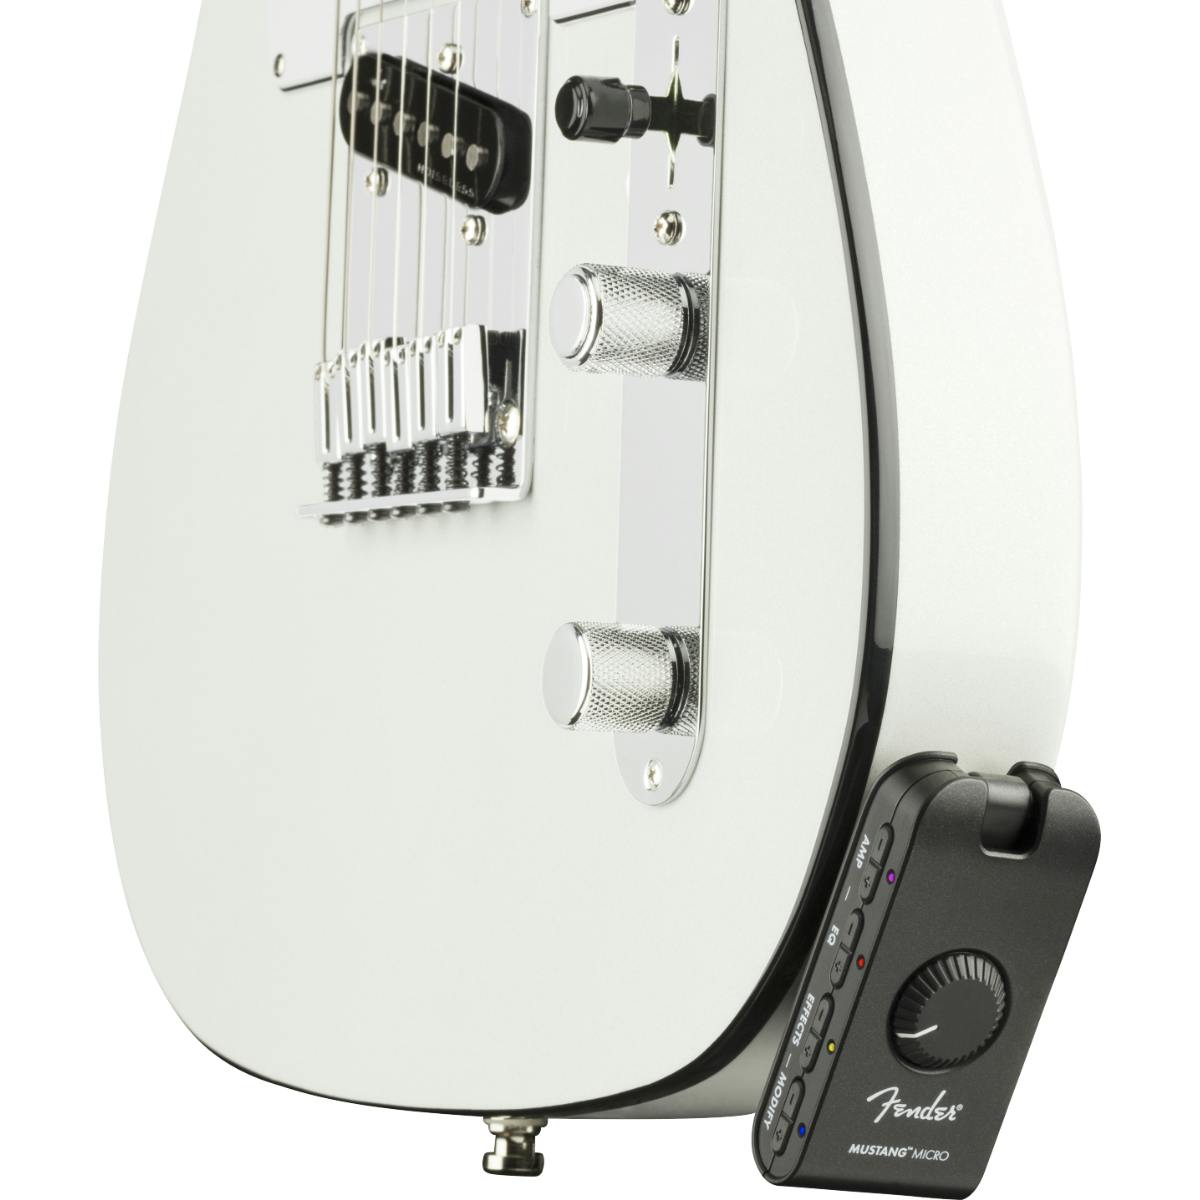 Fender Mustang Micro Headphone Guitar Amp - Andertons Music Co.